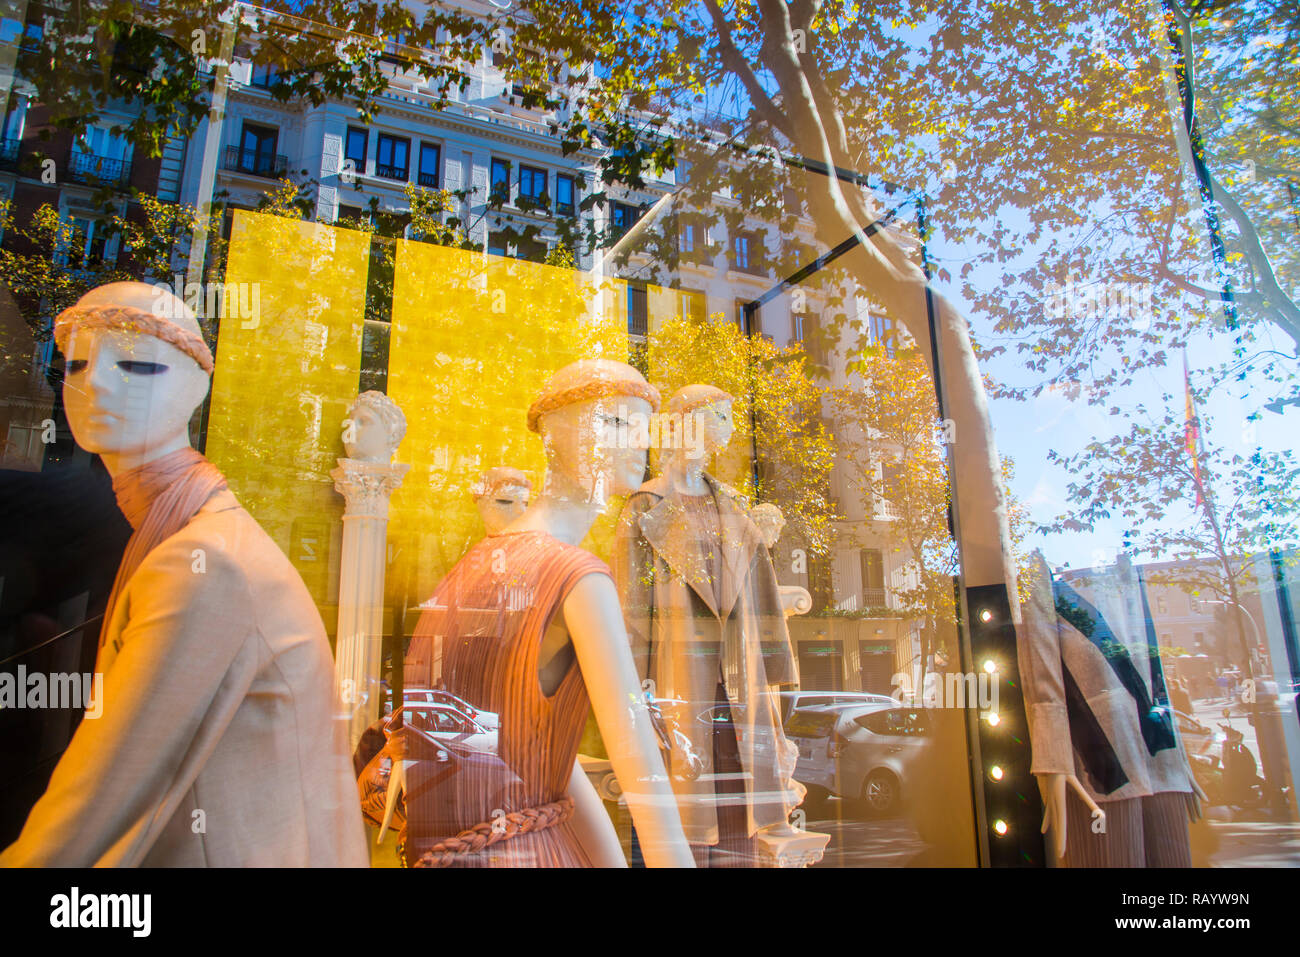 Vitrine et réflexions sur le verre. La rue Serrano, Madrid, Espagne. Banque D'Images